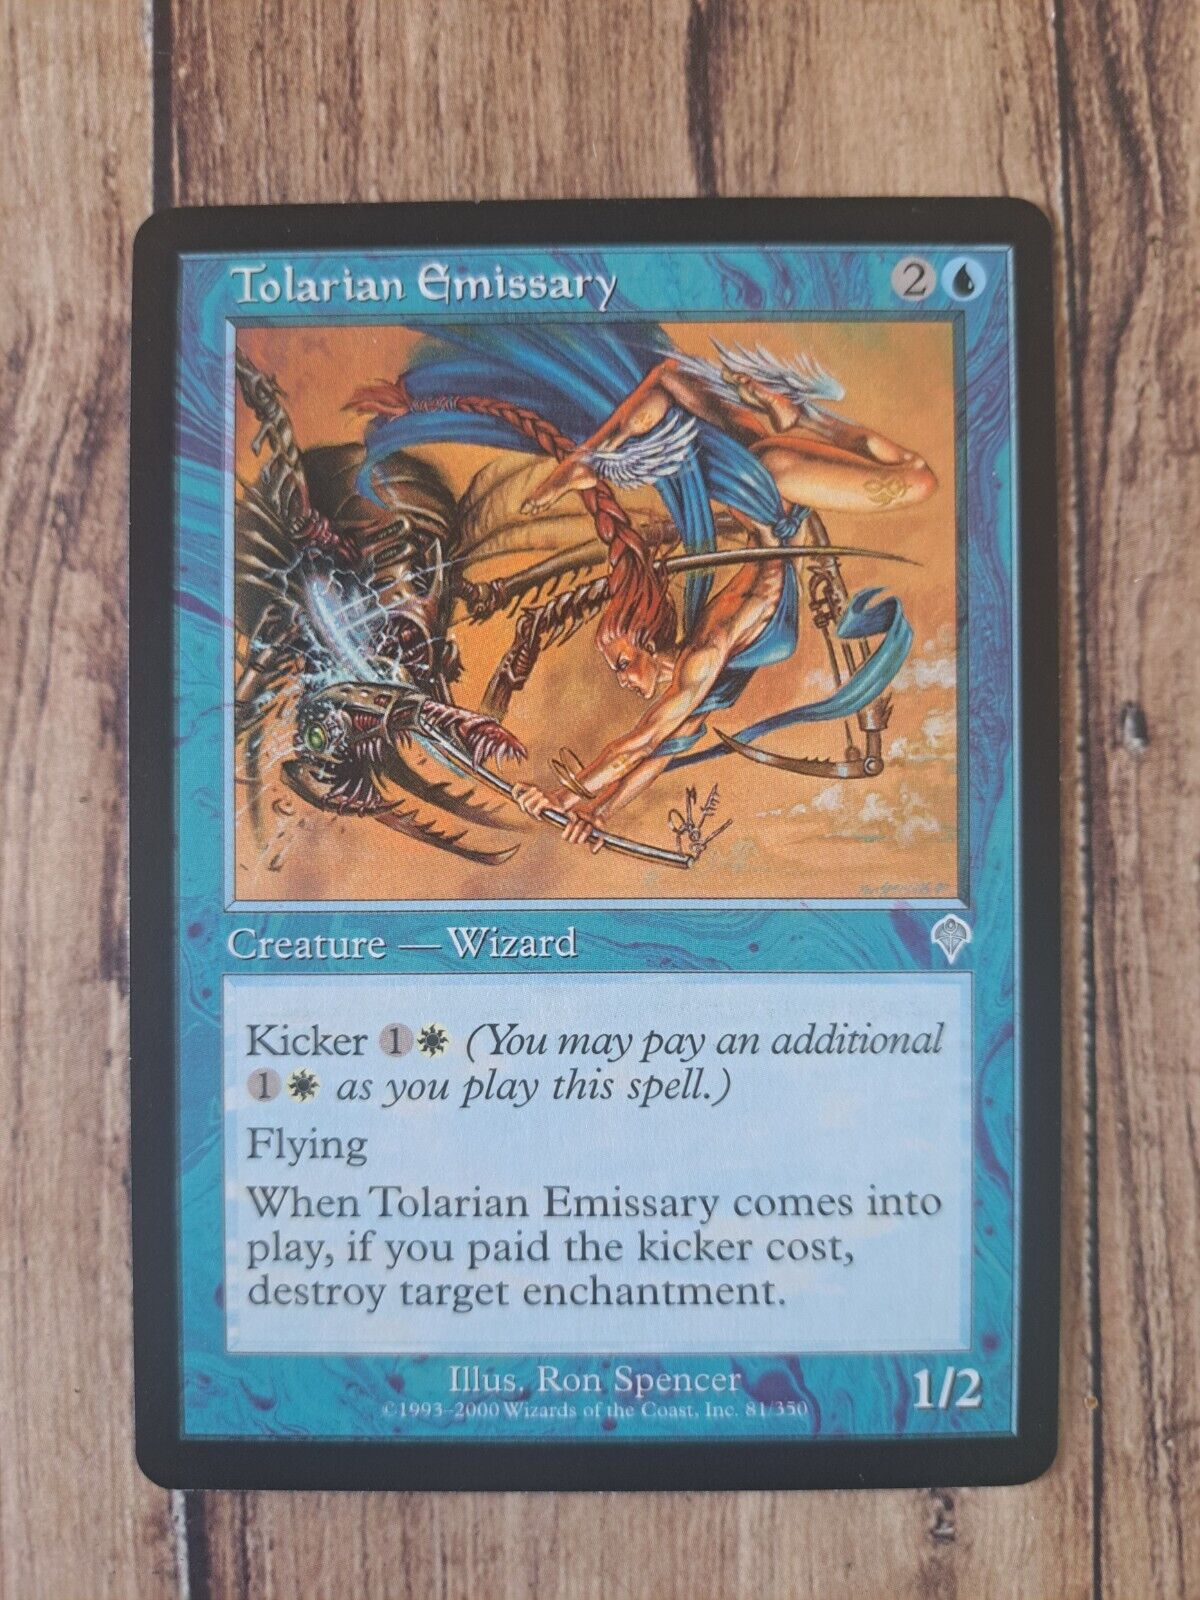 Tolarian Emissary - MTG - Magic the Gathering   card- 1993-2000